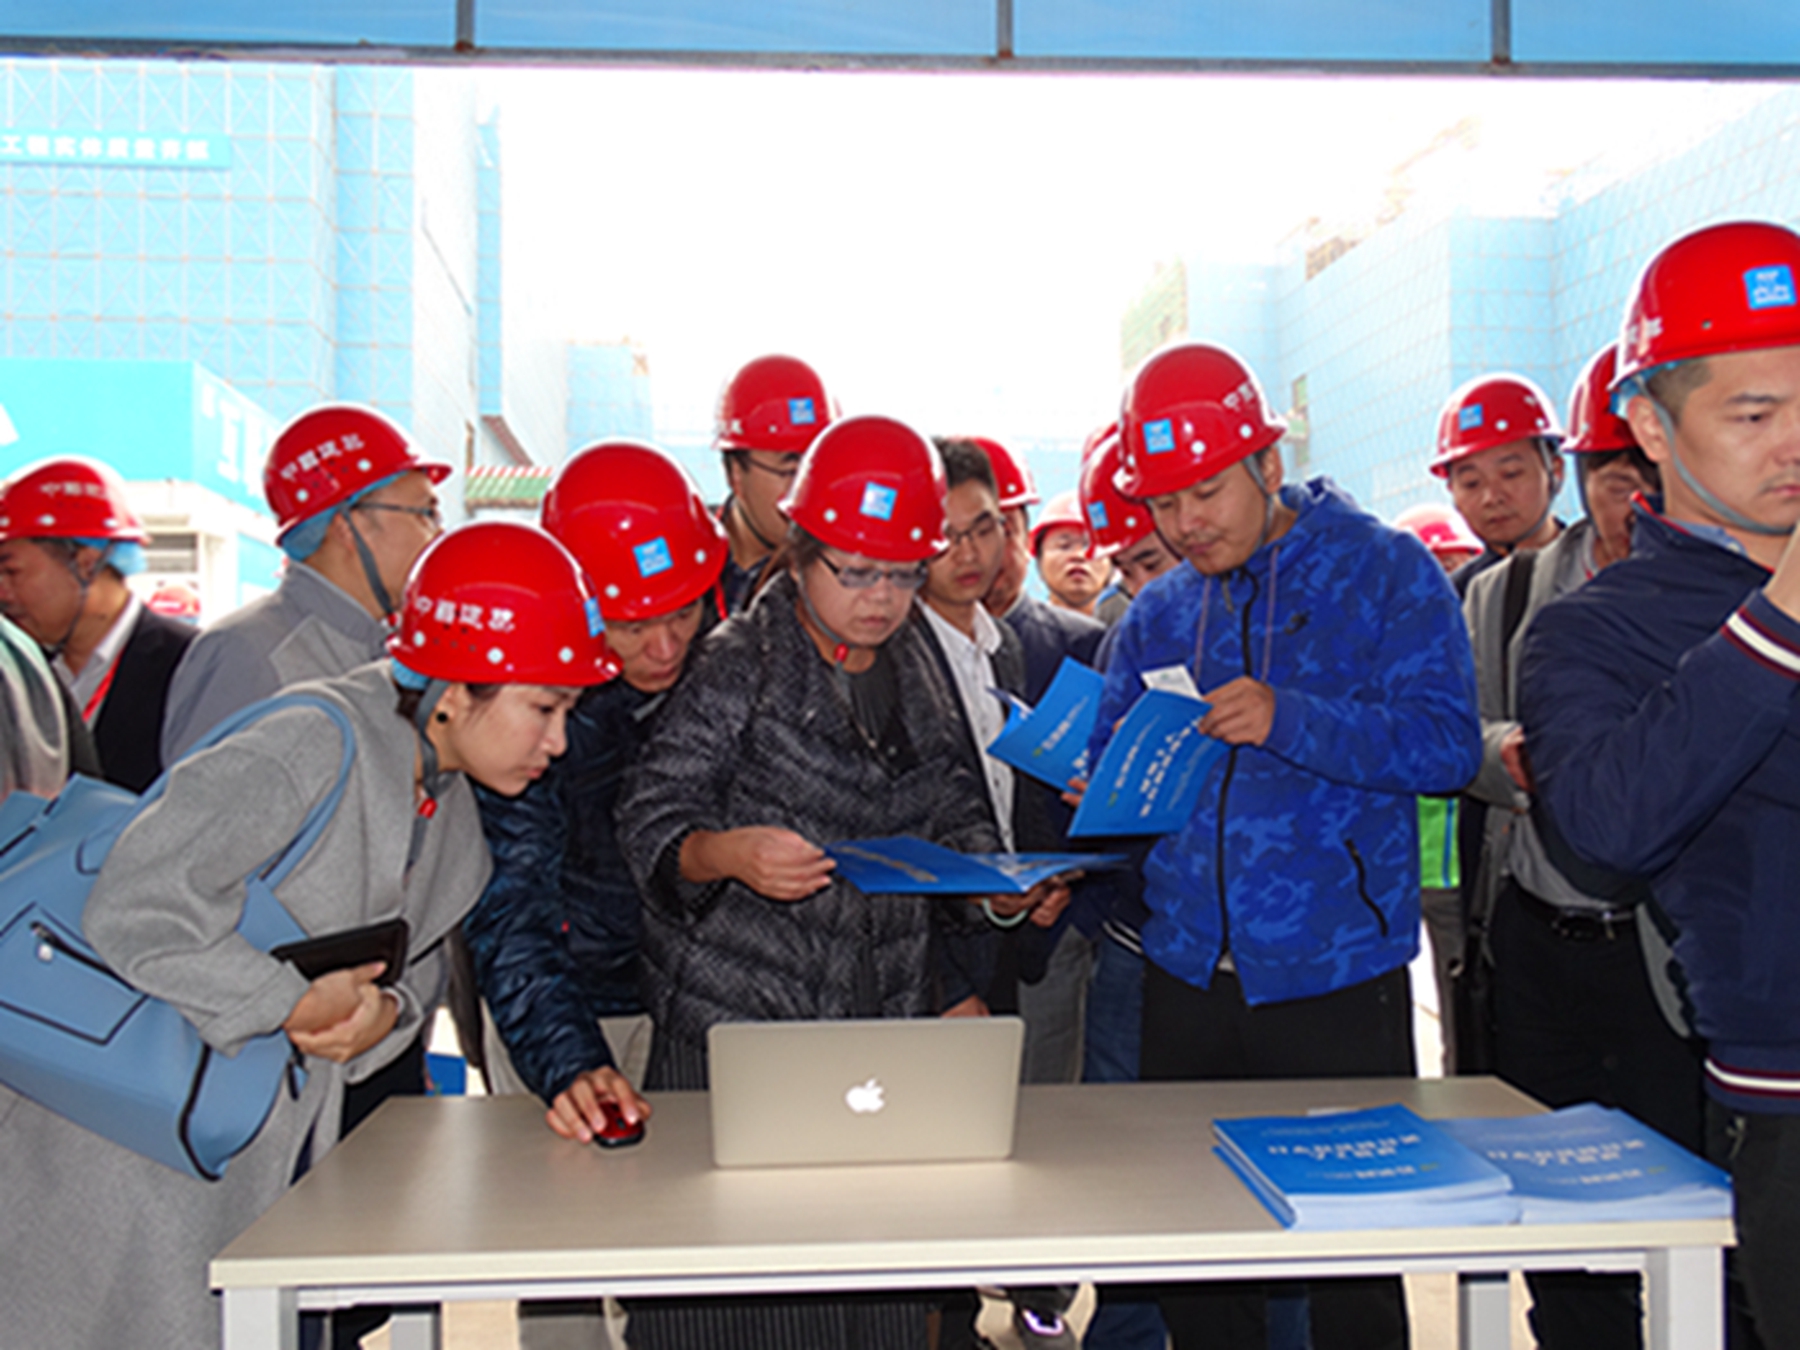 中国拟实施建筑工人实名制 需登记并经基本安全培训